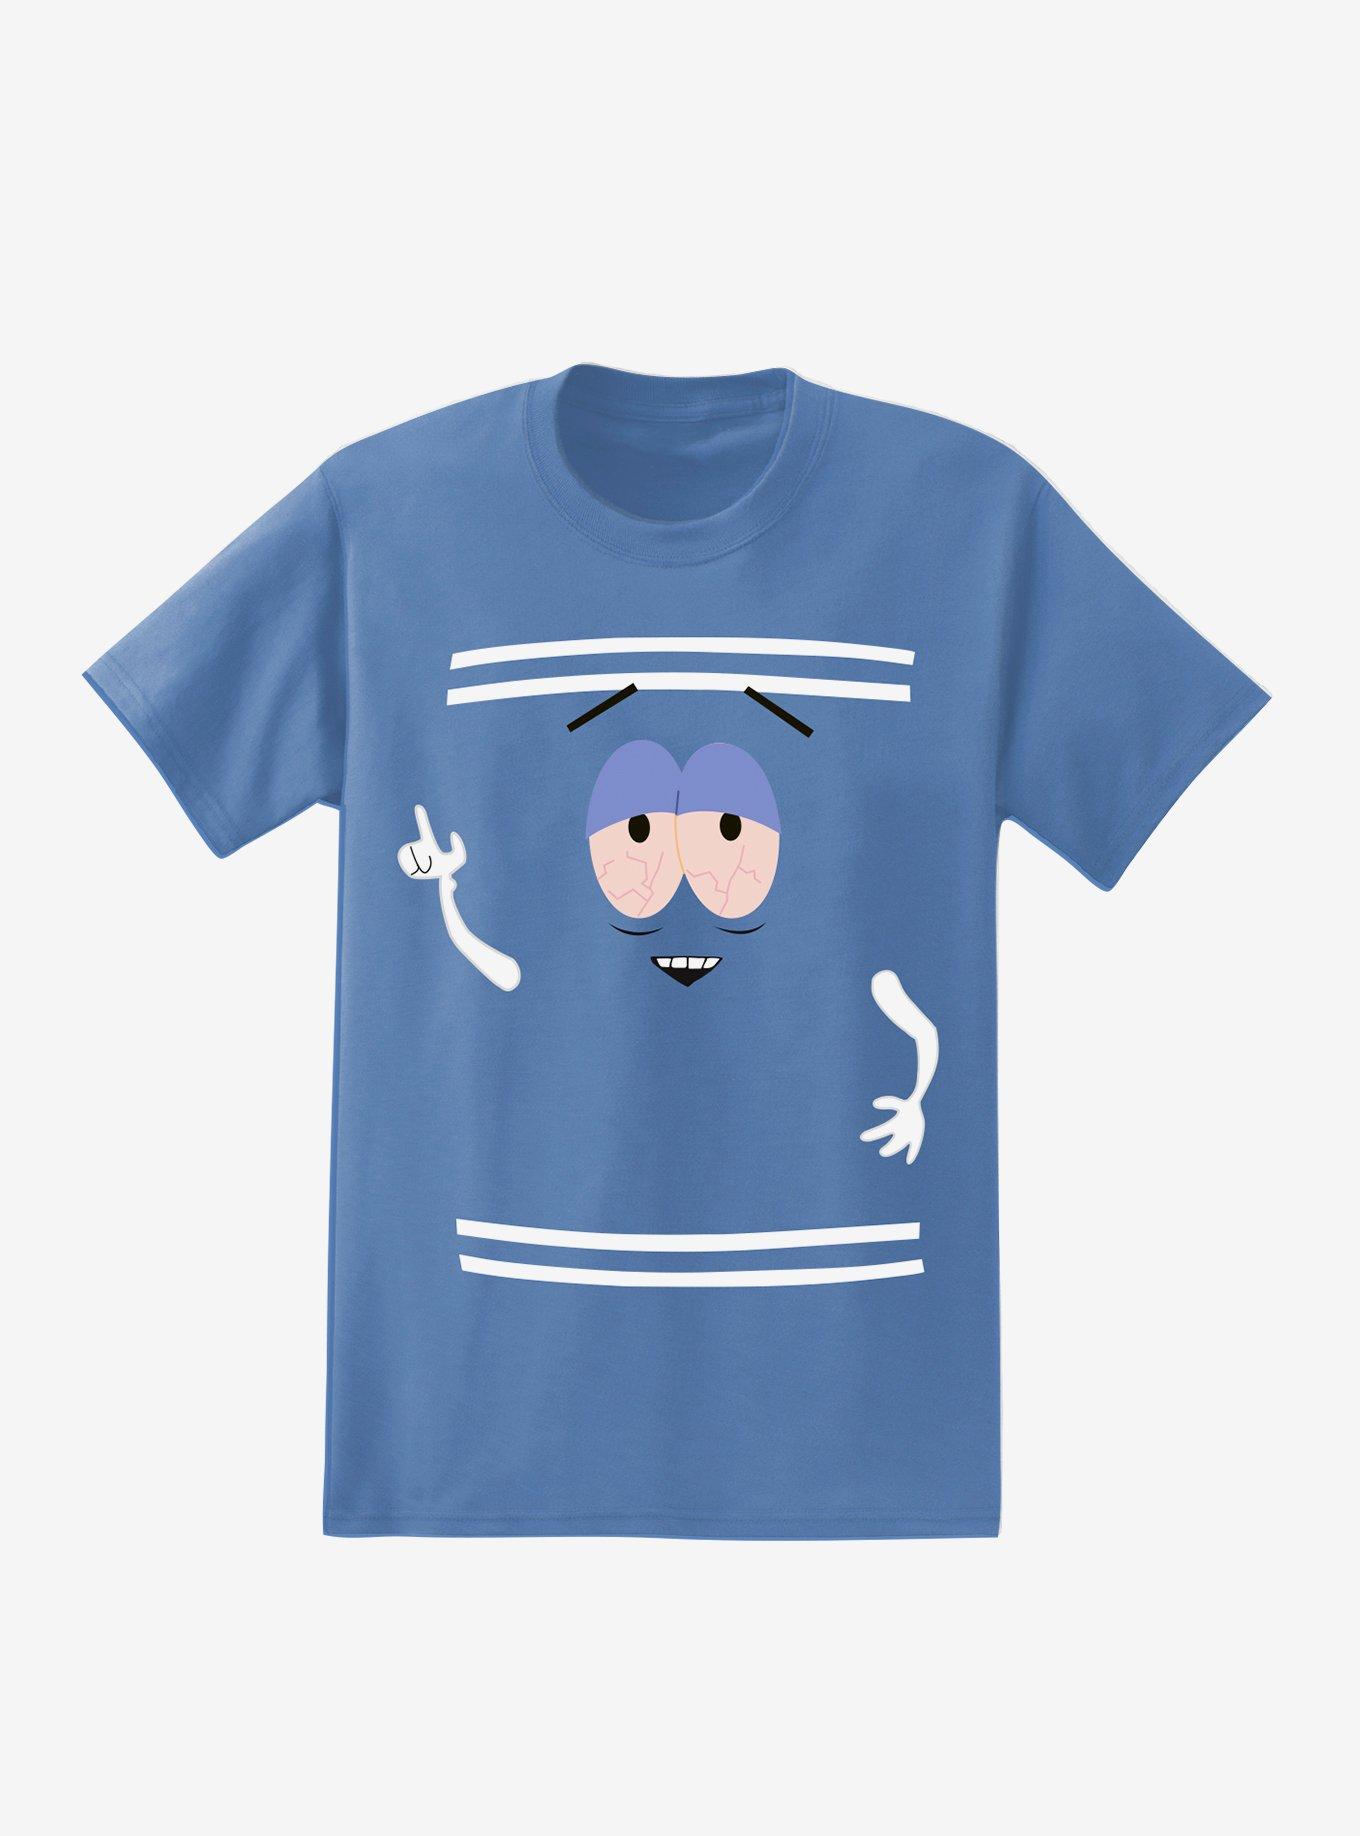 South Park Towelie T-Shirt, LT BLUE, hi-res